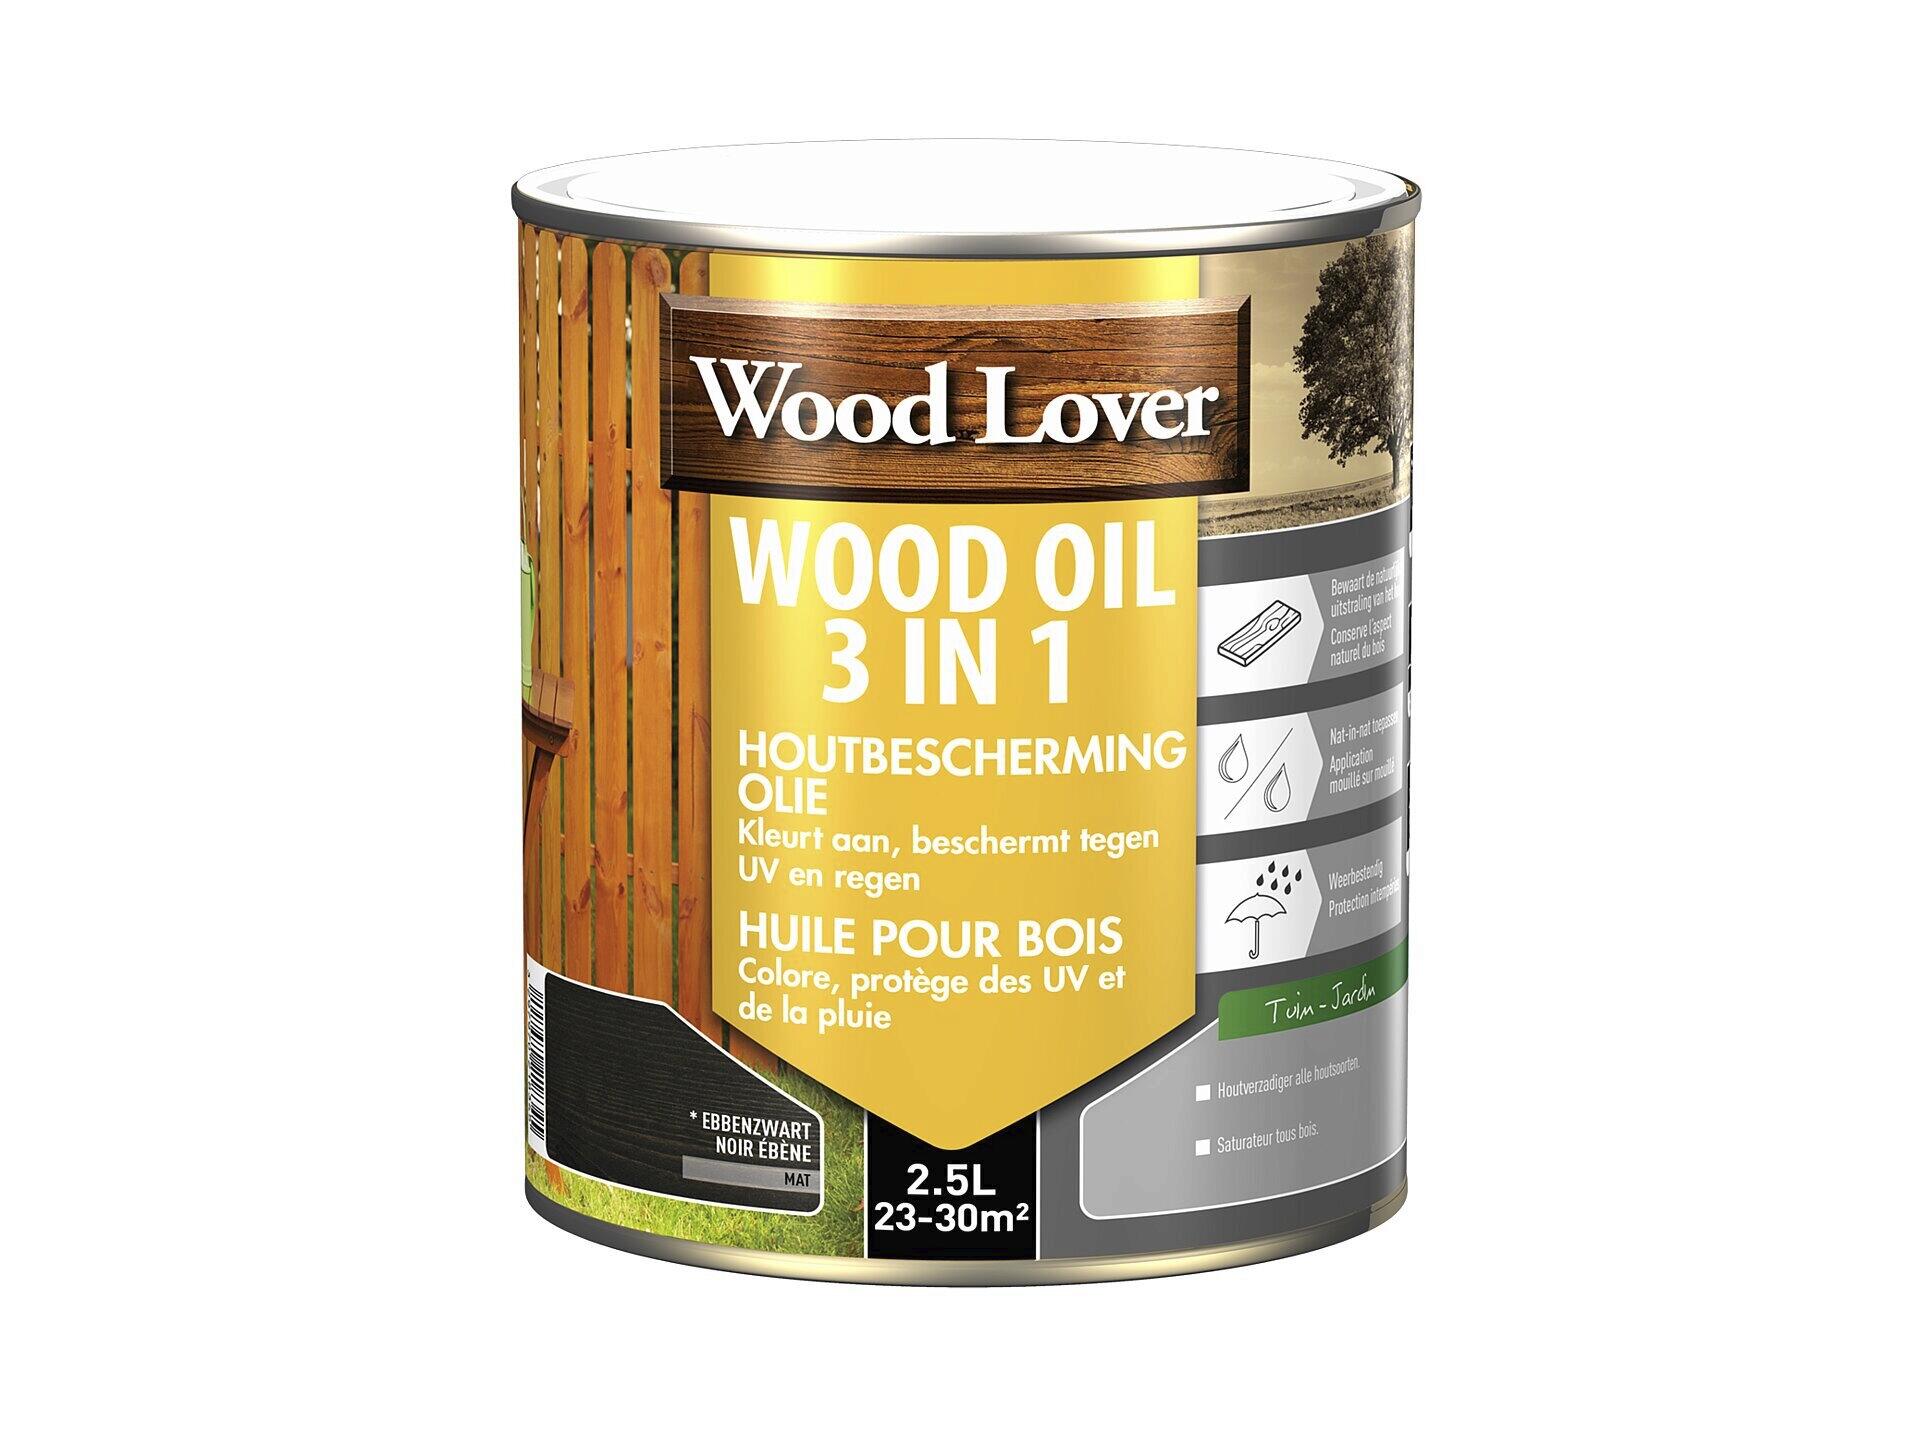 Wood Lover Wood Oil 3 in 1 houtbescherming olie 2,5l ebben